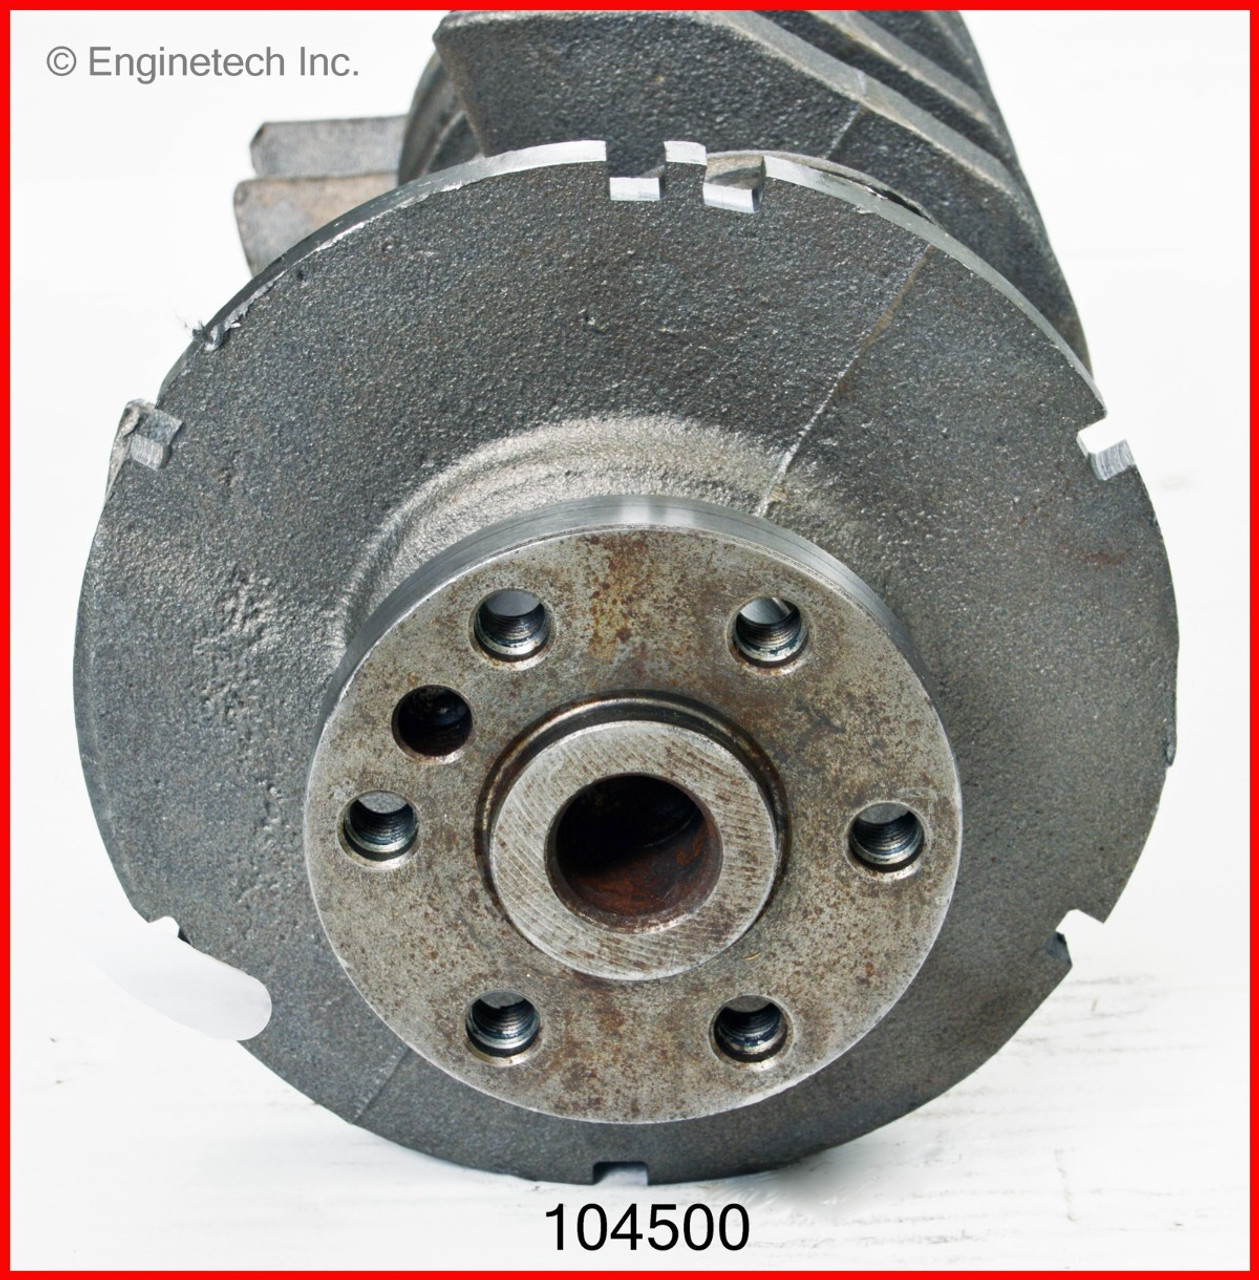 Crankshaft Kit - 2002 Saturn L200 2.2L (104500.B12)